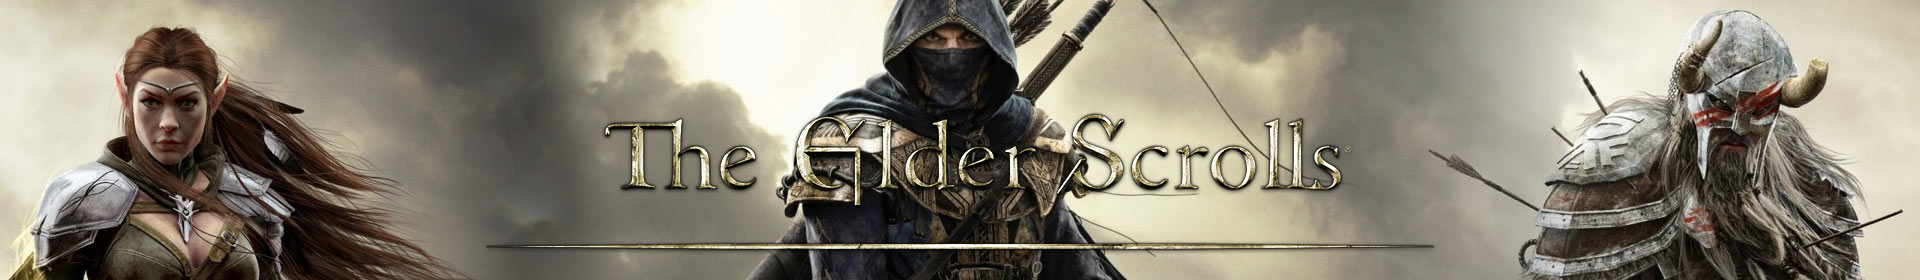 Elder Scrolls Online Gold